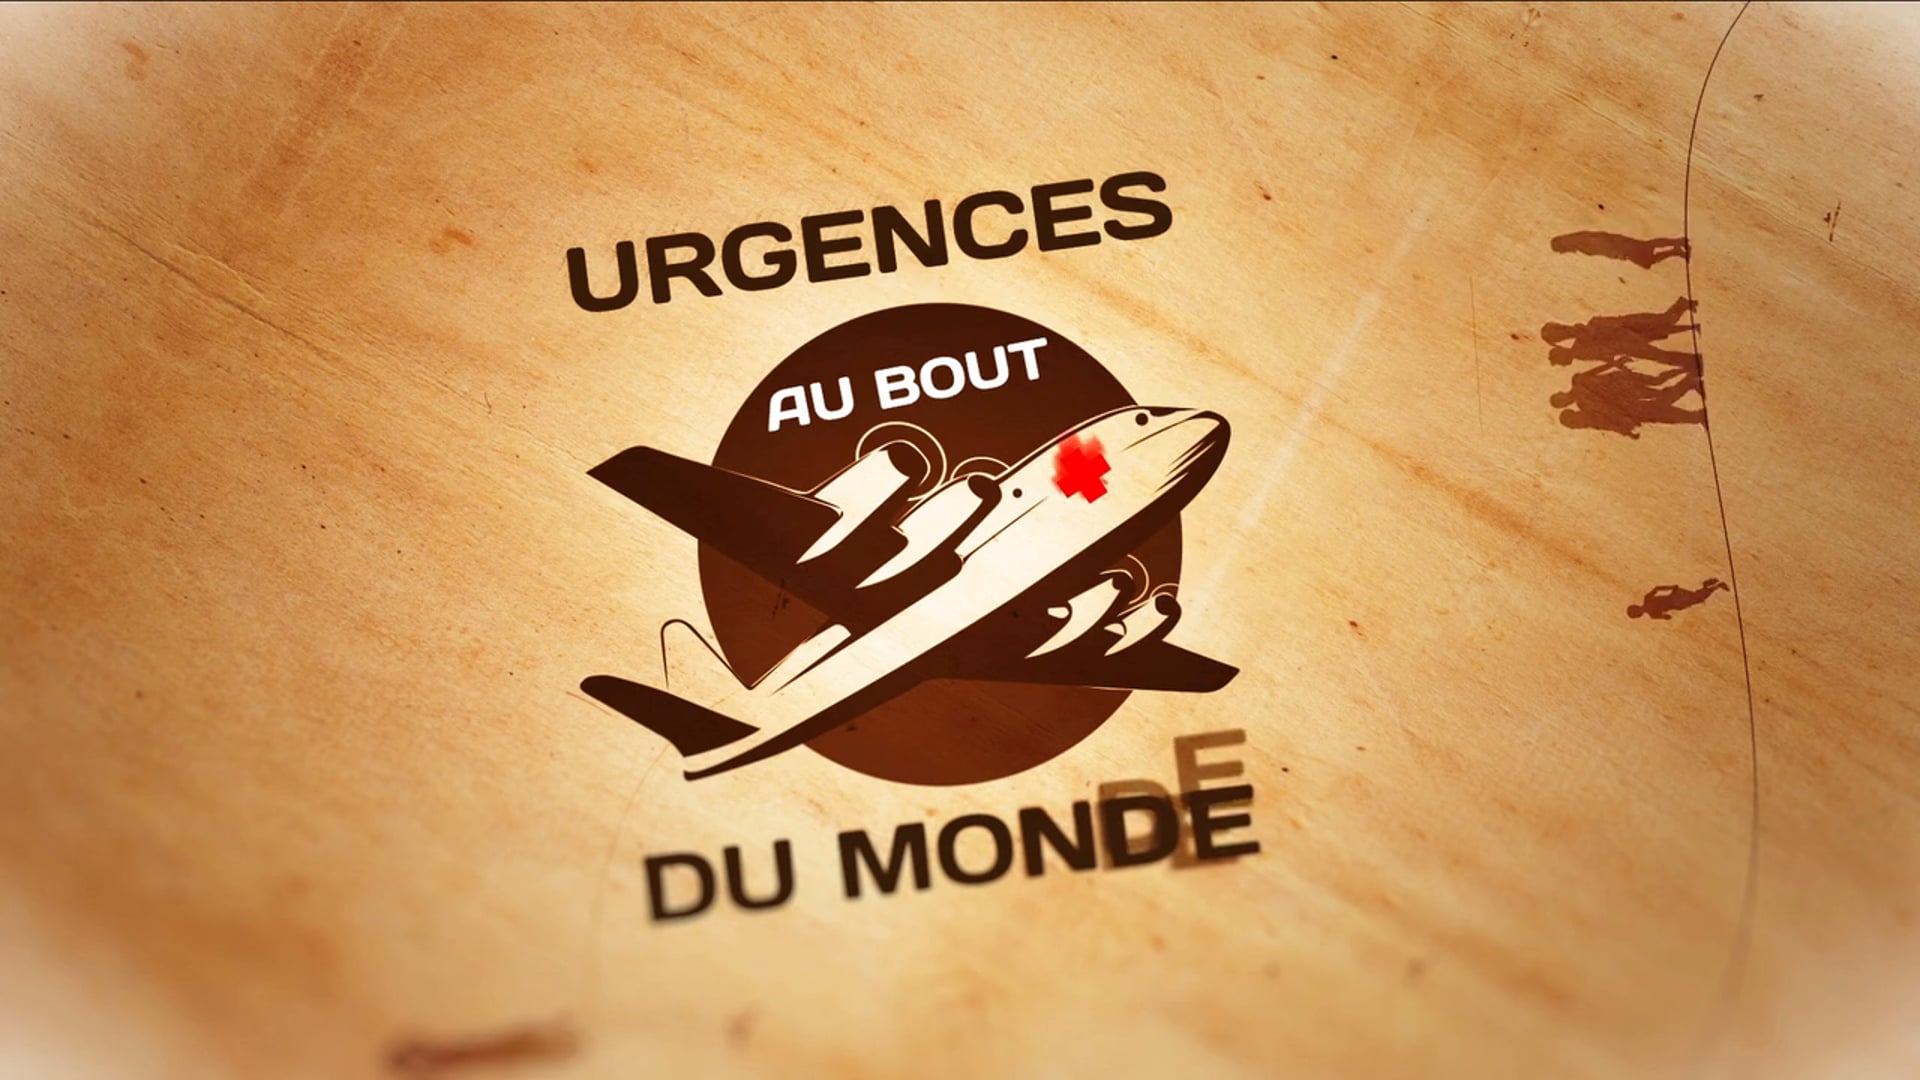 "Urgences chez les inuits" teaser